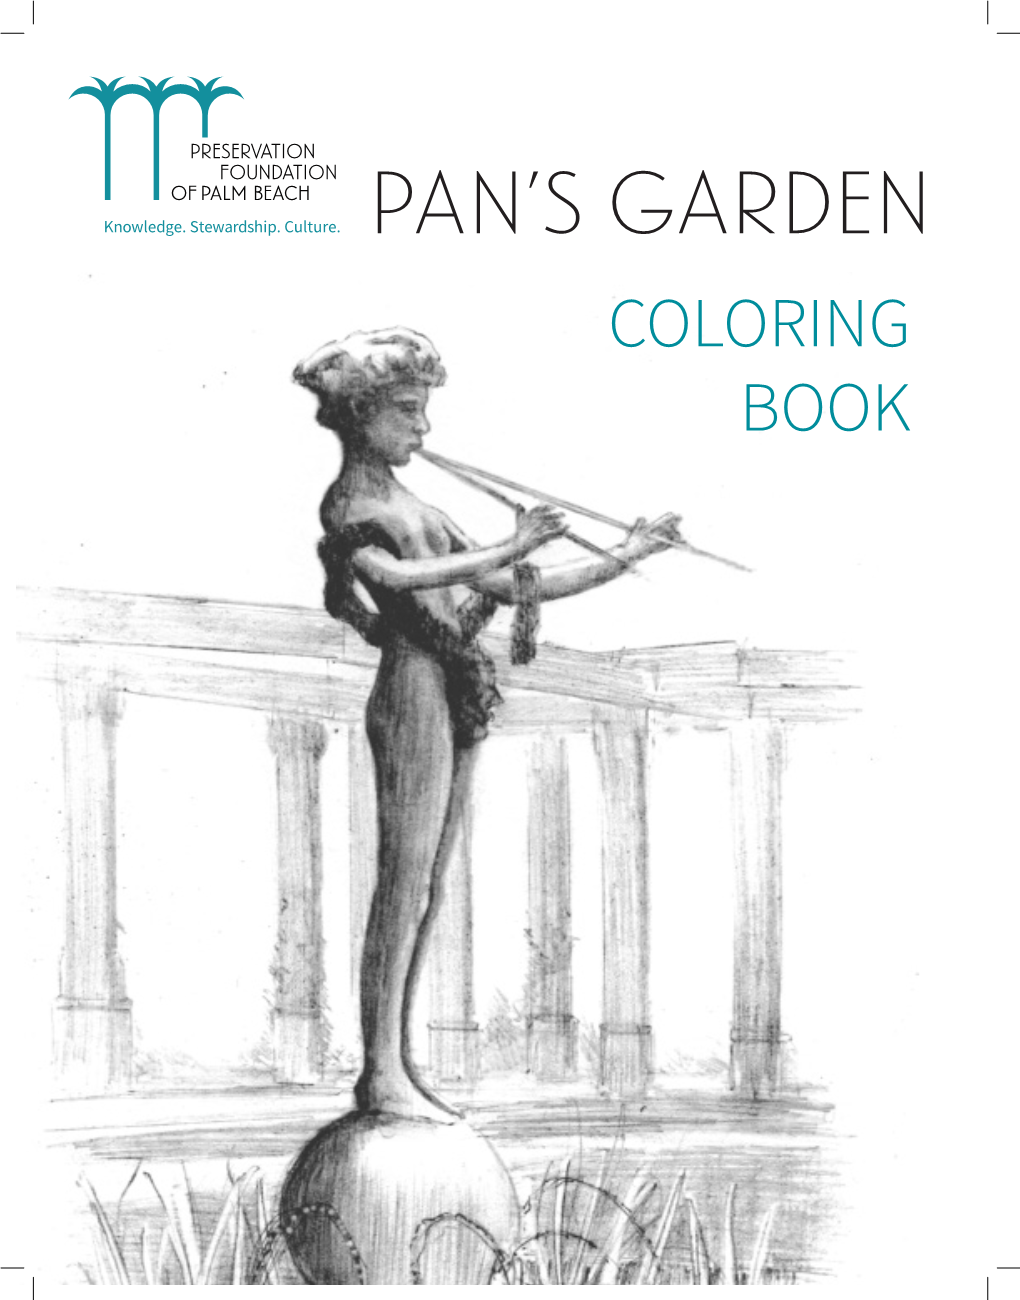 Pan's Garden Coloring Book